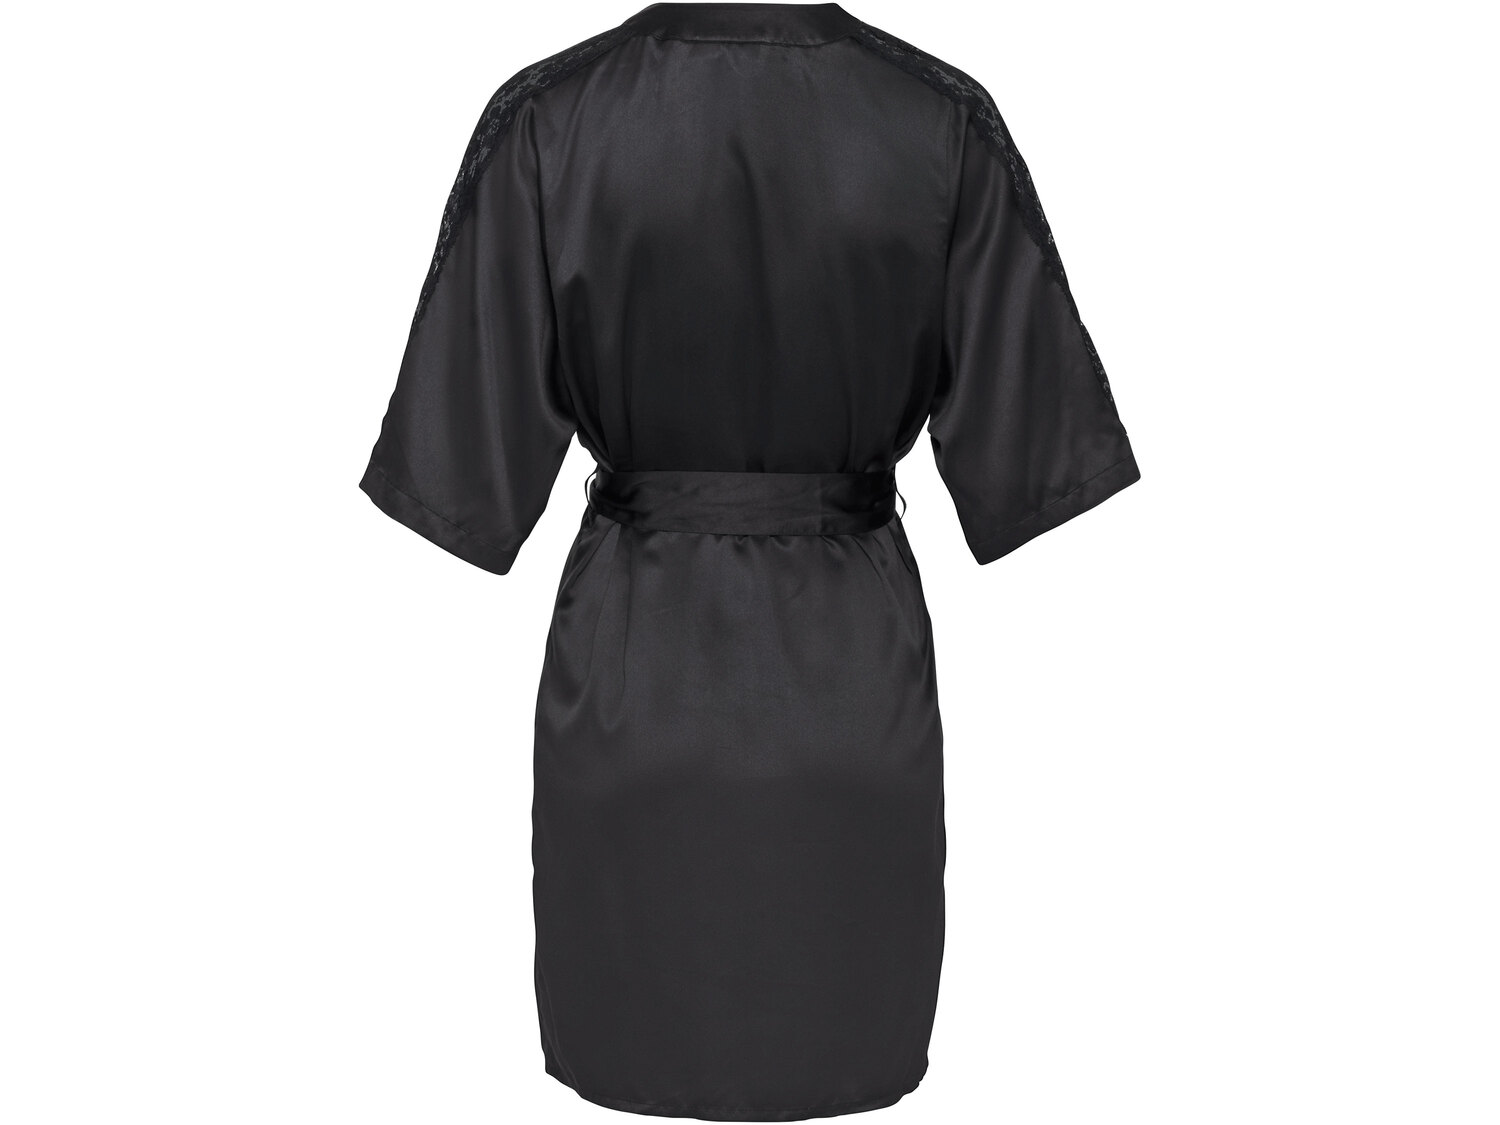 Kimono satynowe Esmara Lingerie, cena 34,99 PLN 
- rozmiary: XS-L
Dostępne rozmiary

Opis

- ...